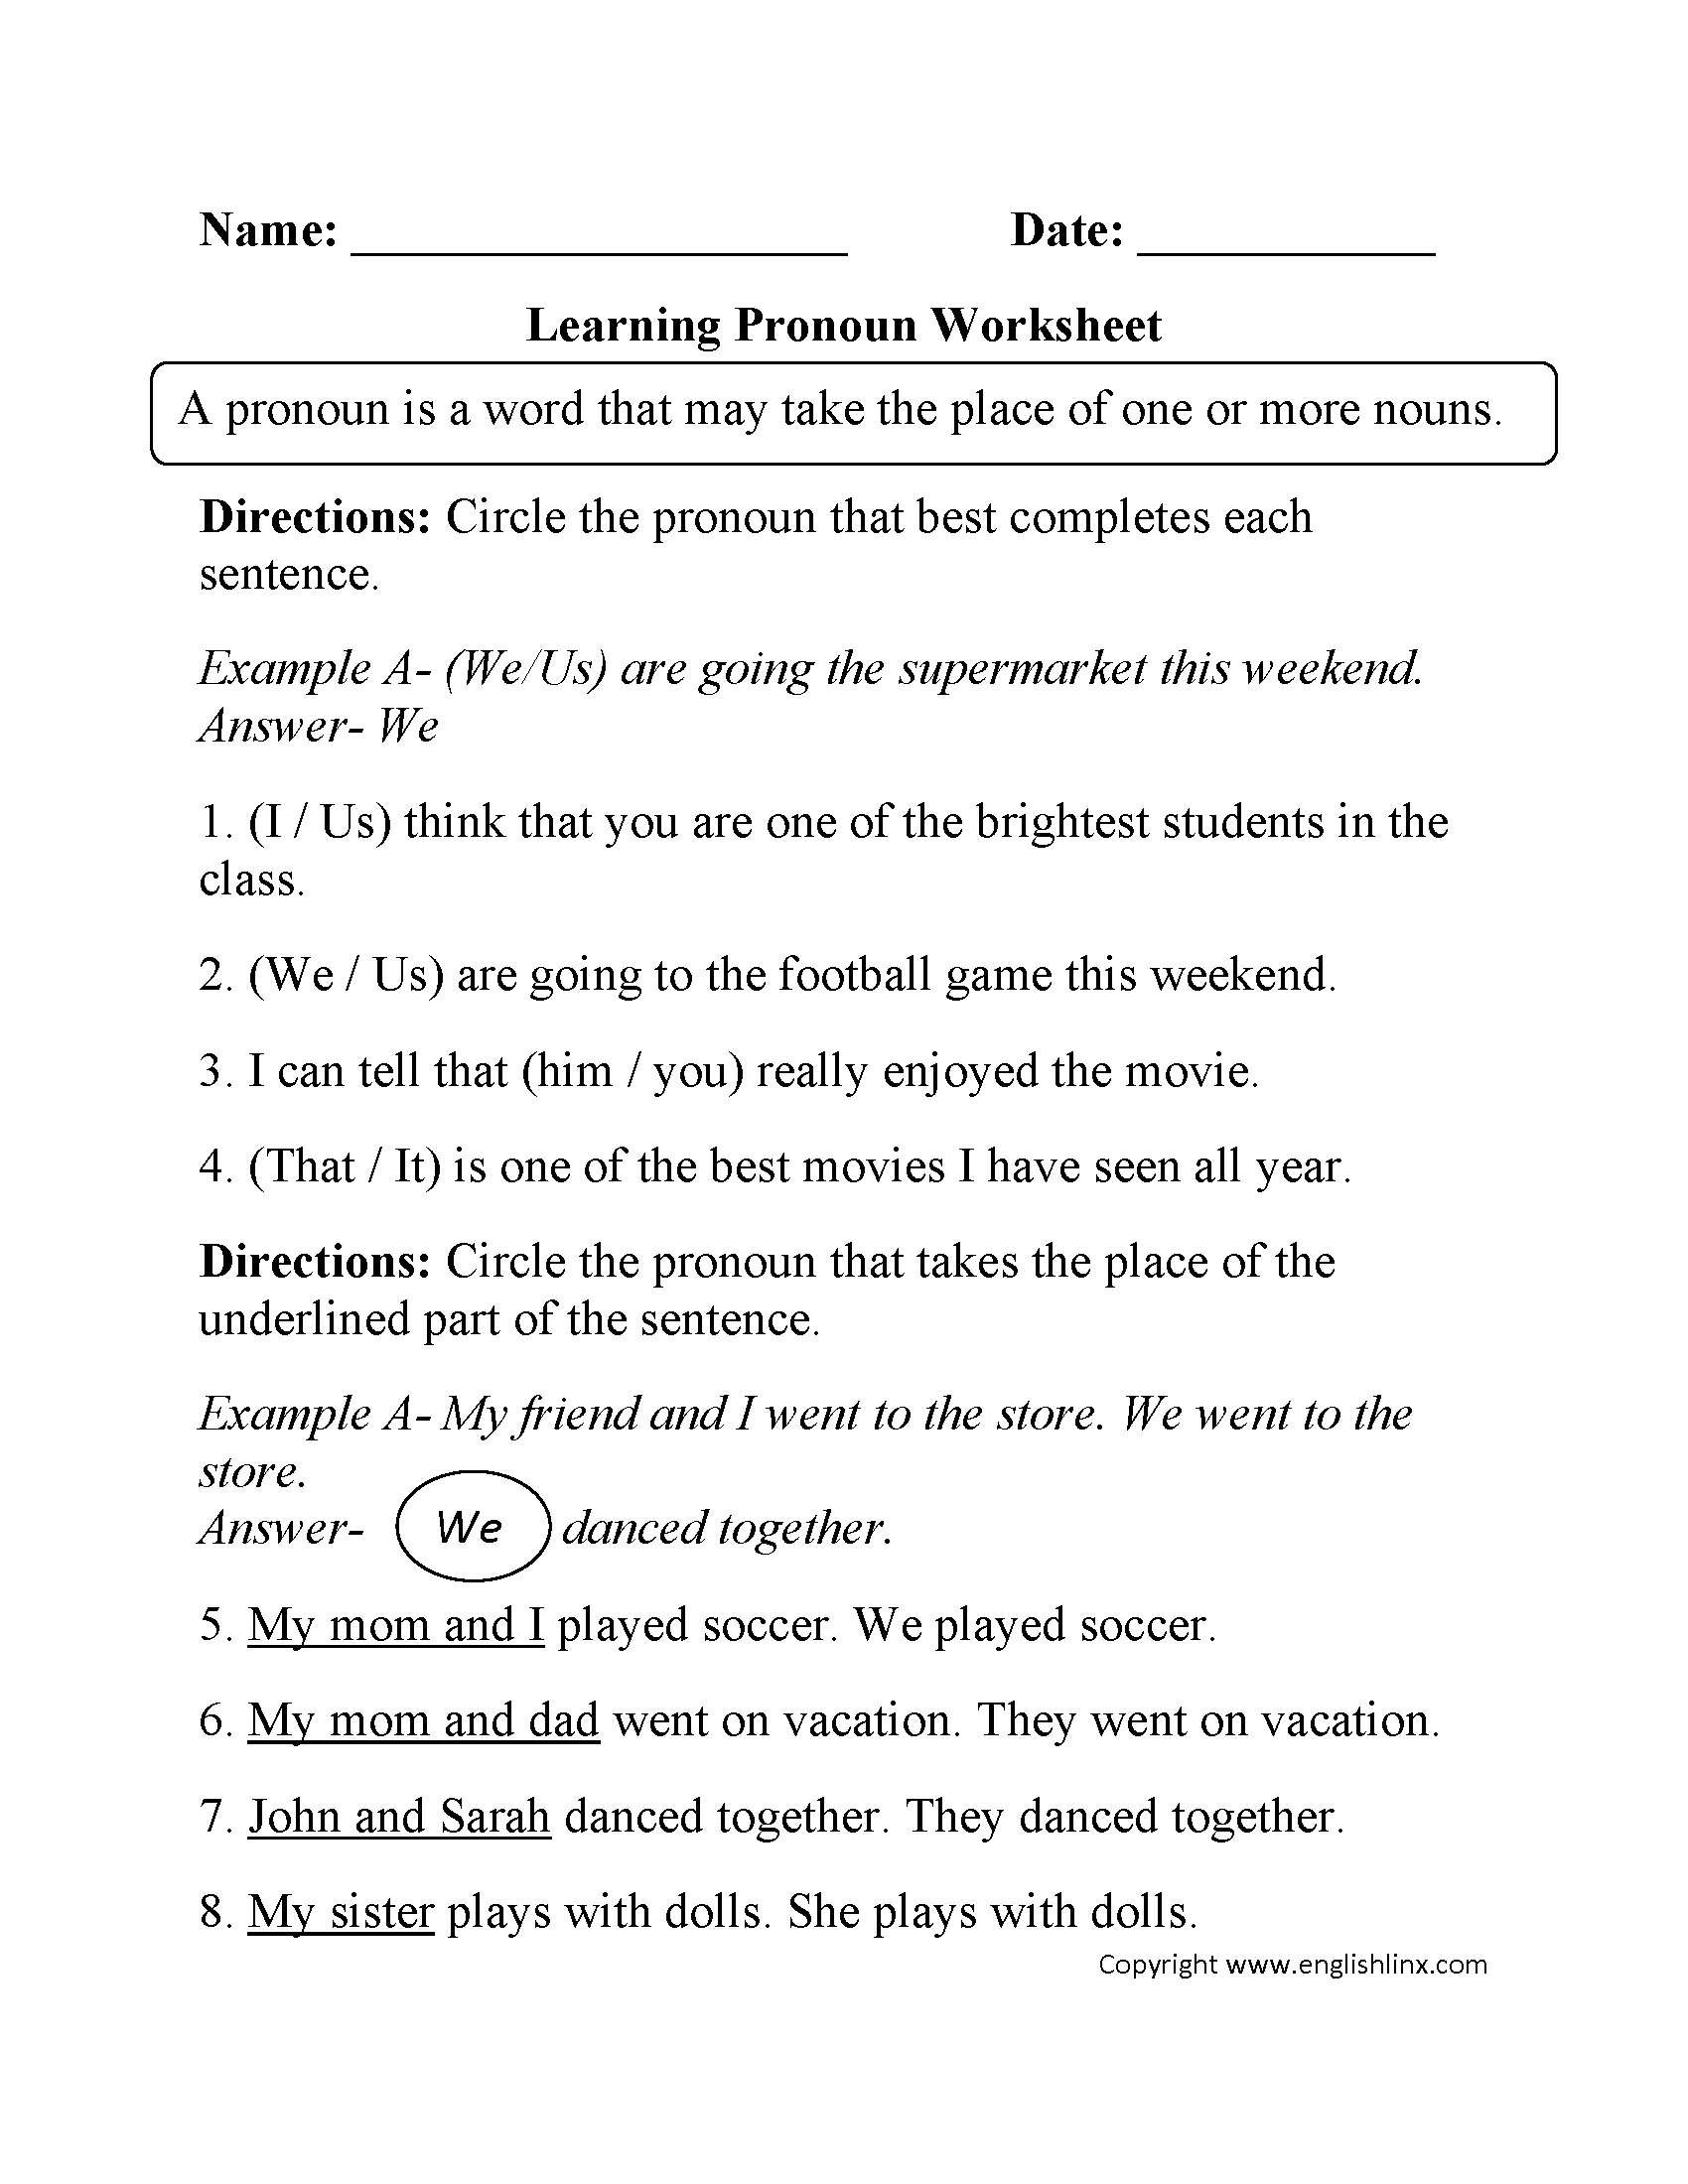 Learning Pronoun Worksheet